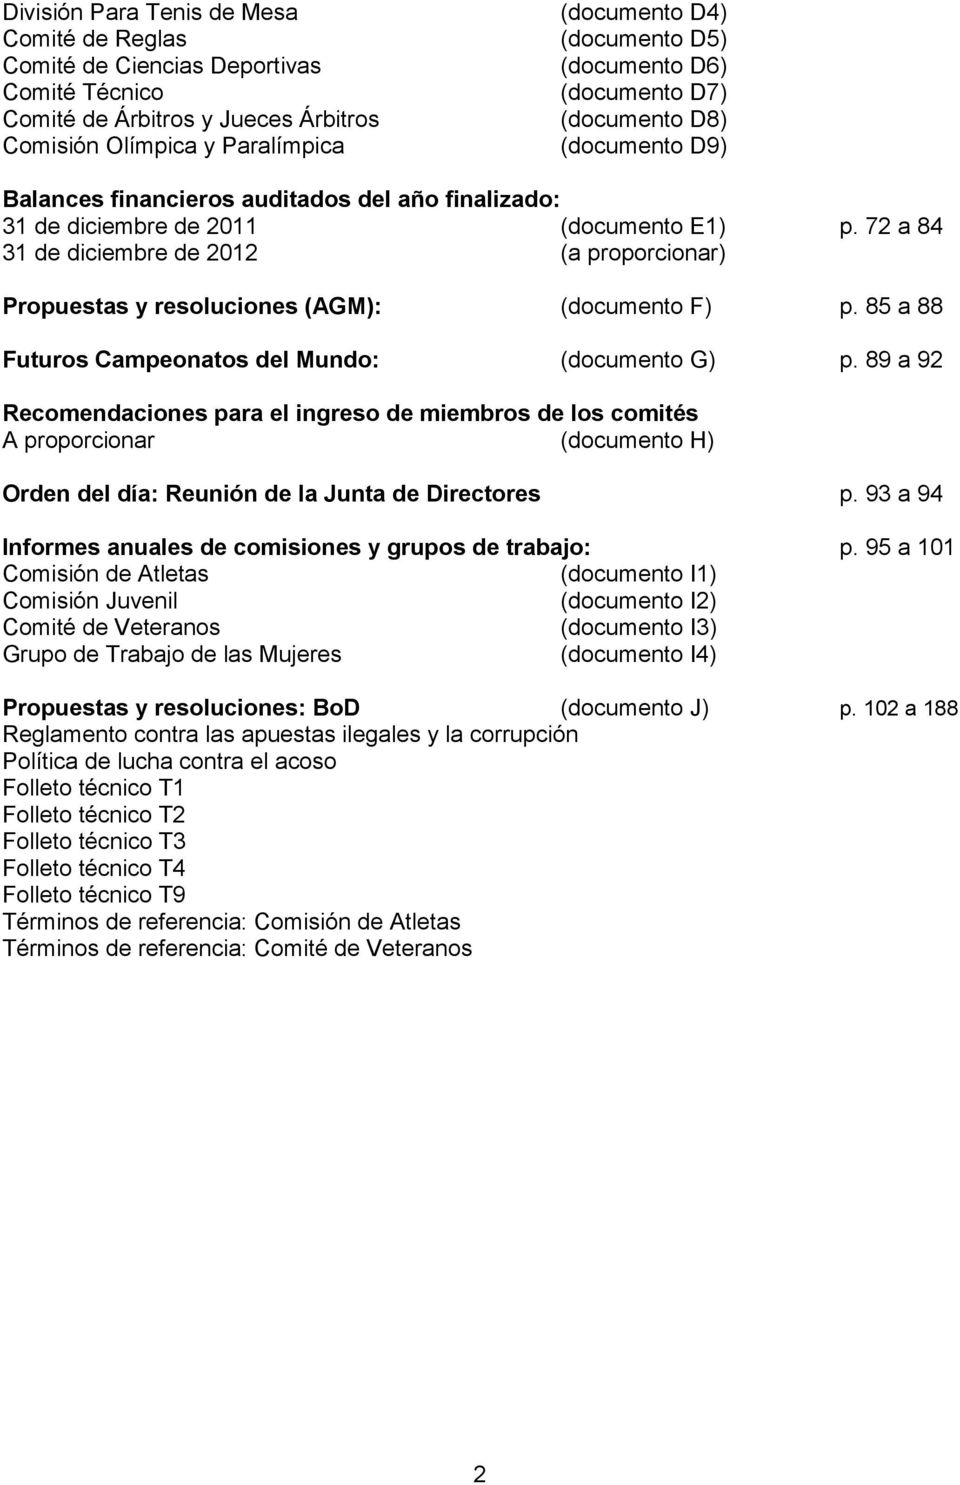 72 a 84 31 de diciembre de 2012 (a proporcionar) Propuestas y resoluciones (AGM): (documento F) p. 85 a 88 Futuros Campeonatos del Mundo: (documento G) p.